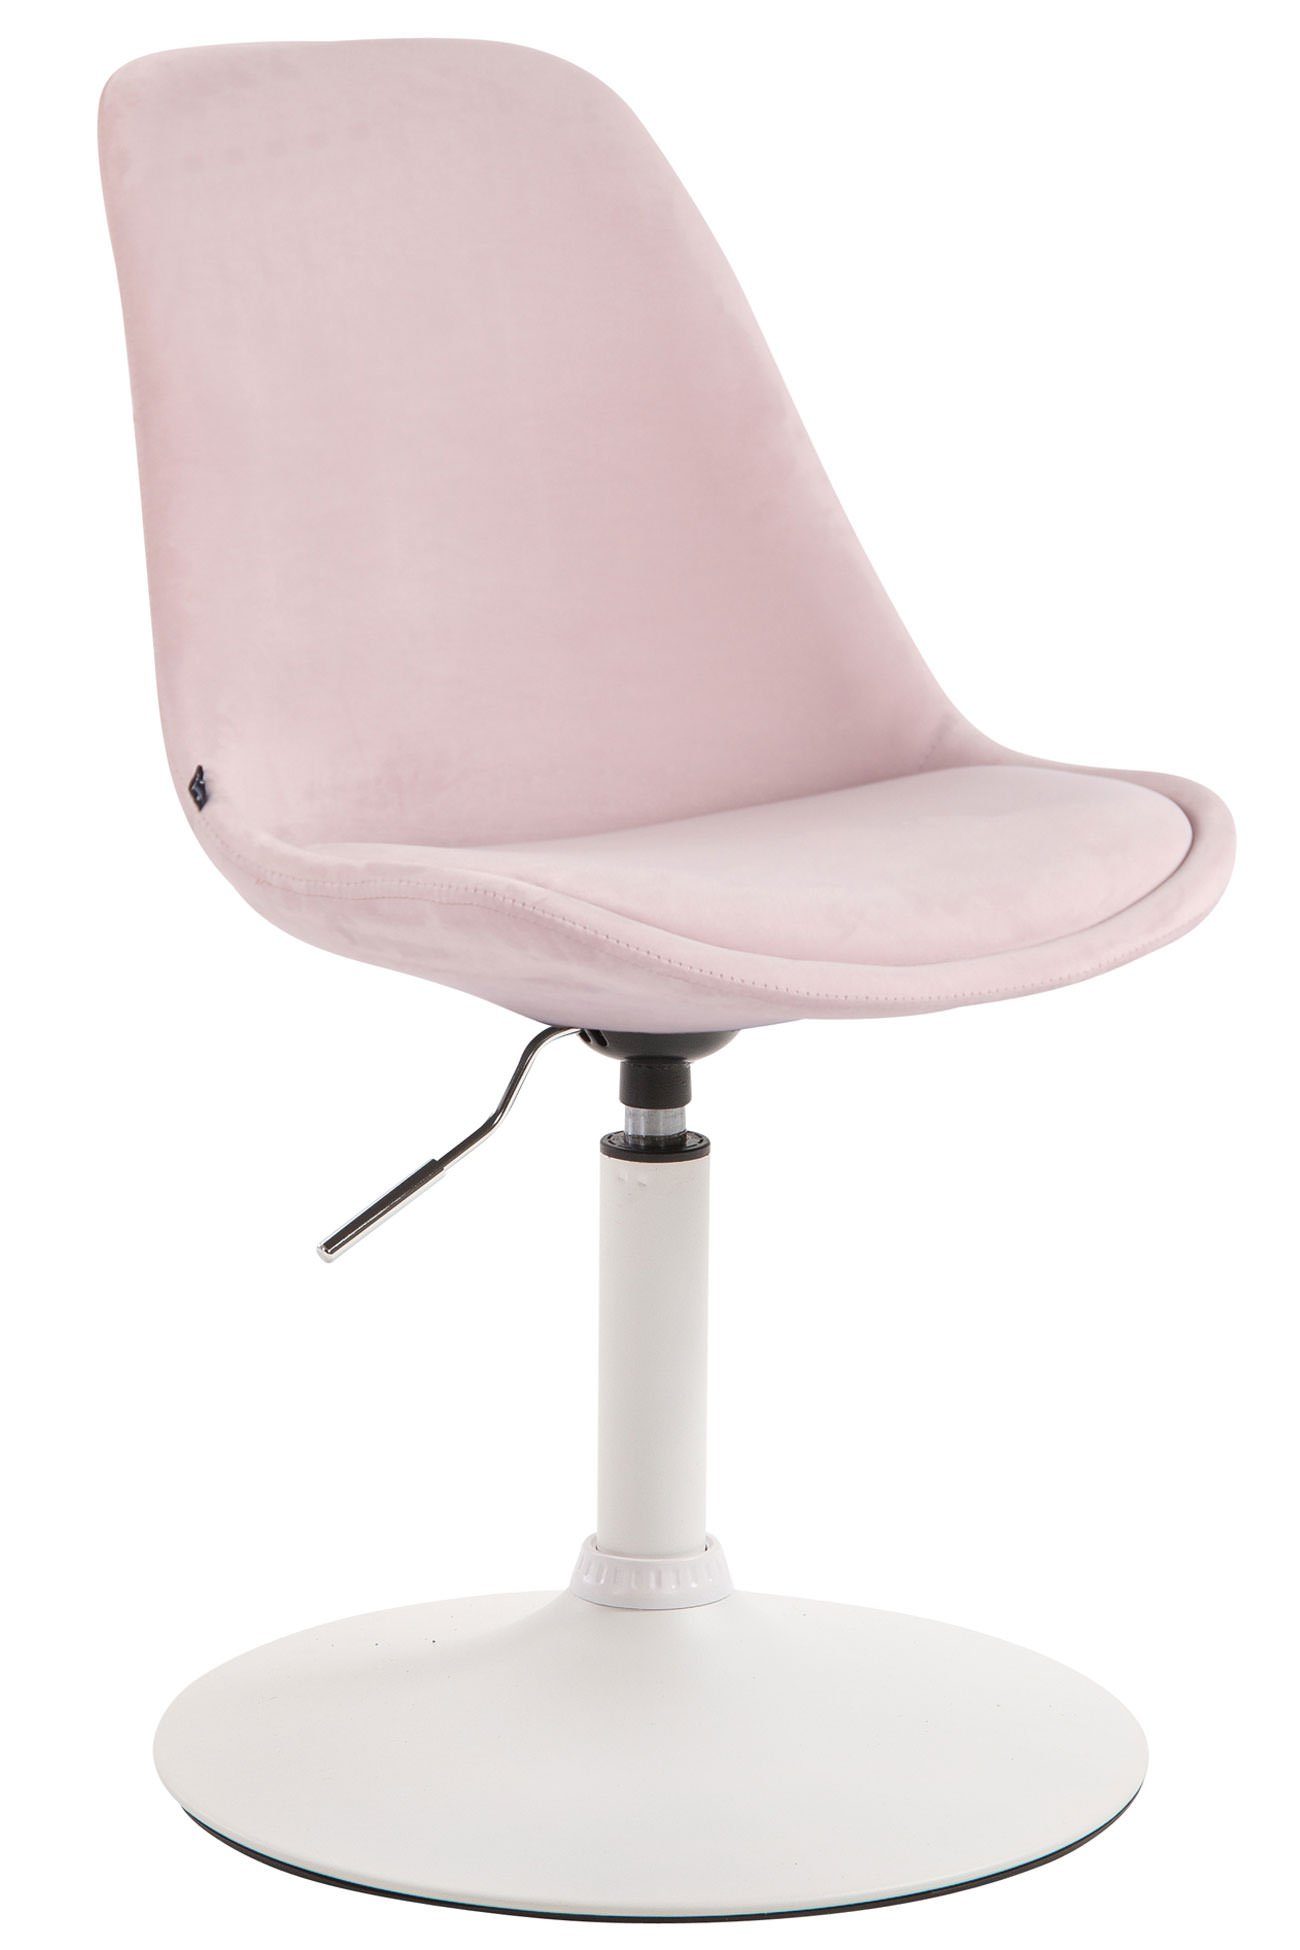 TPFLiving Esszimmerstuhl Mavic mit hochwertig gepolsterter Sitzfläche - Konferenzstuhl (Küchenstuhl - Esstischstuhl - Wohnzimmerstuhl - Polsterstuhl), Gestell: Metall weiß - Sitzfläche: Samt pink